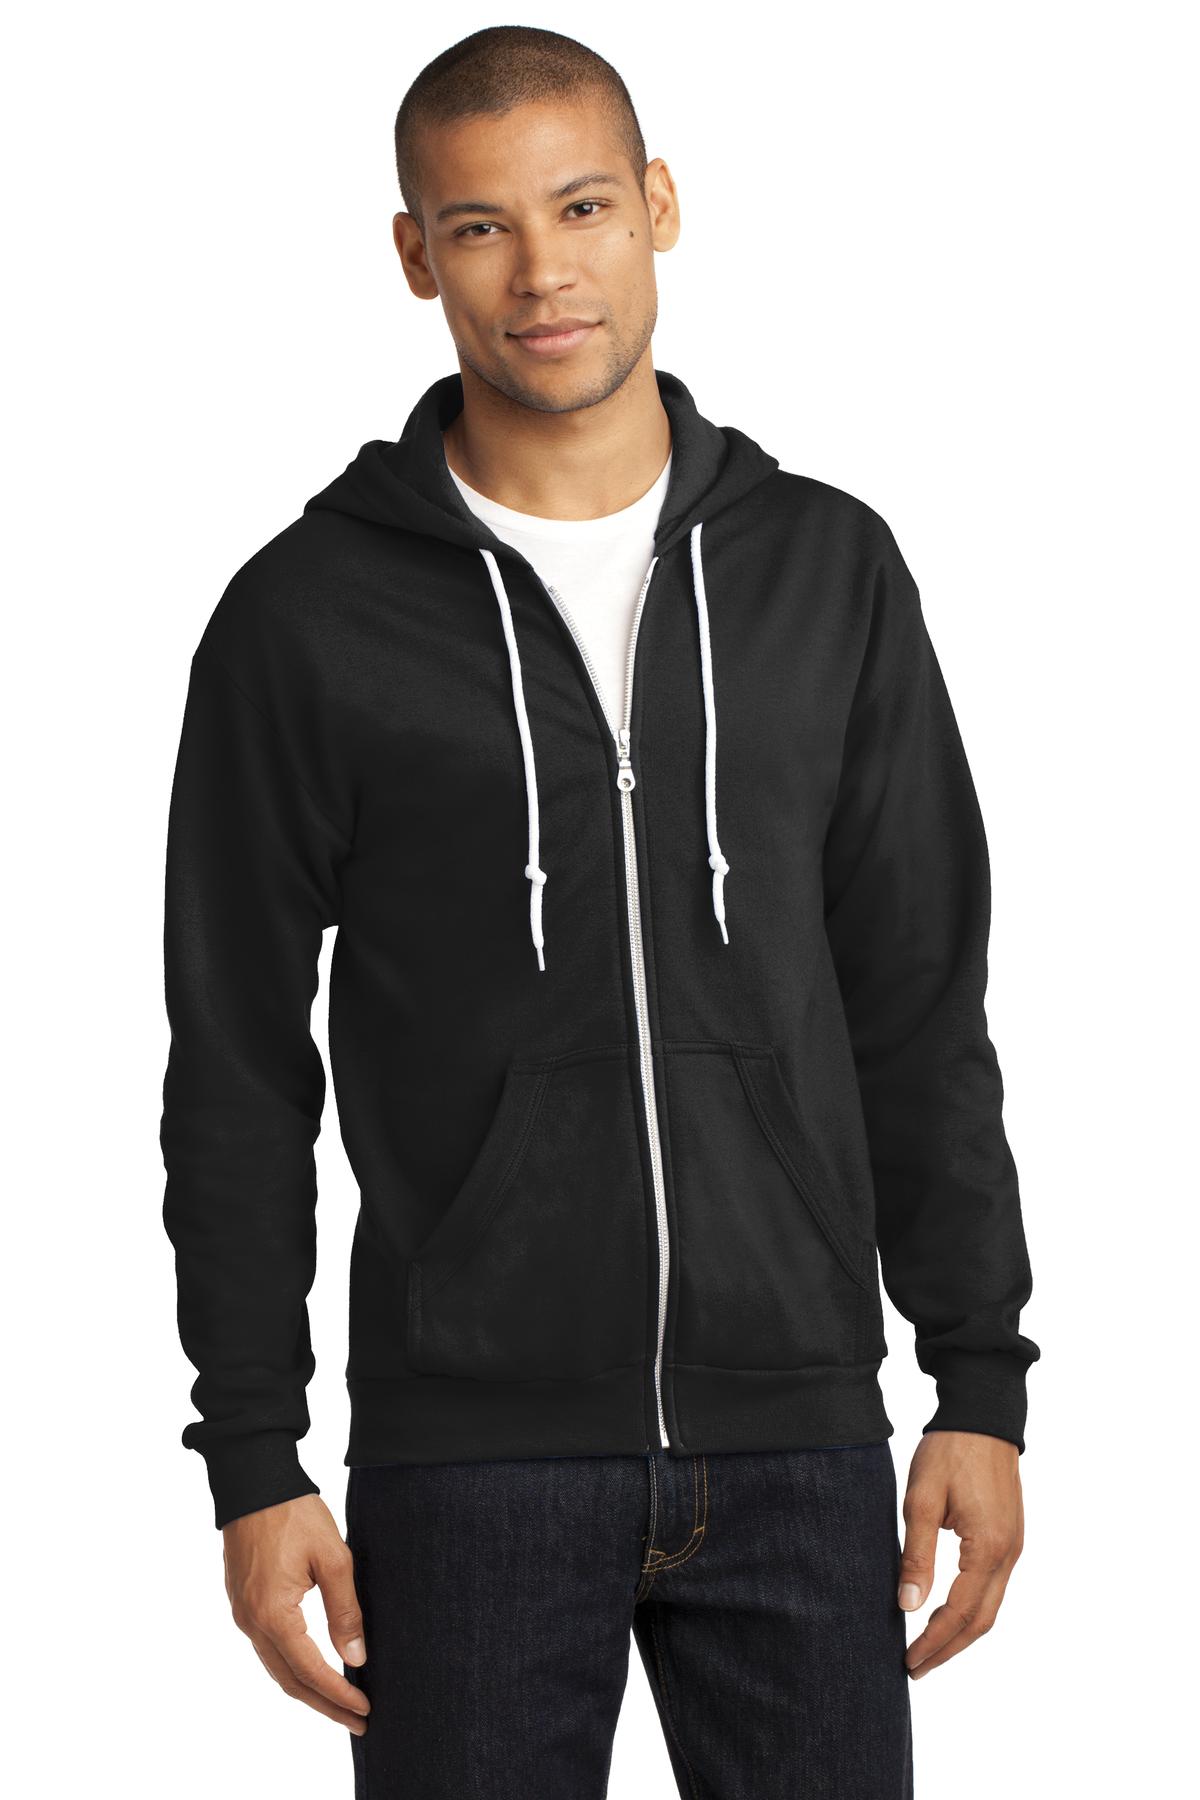 DISCONTINUED Anvil® Full-Zip Hooded Sweatshirt. 71600